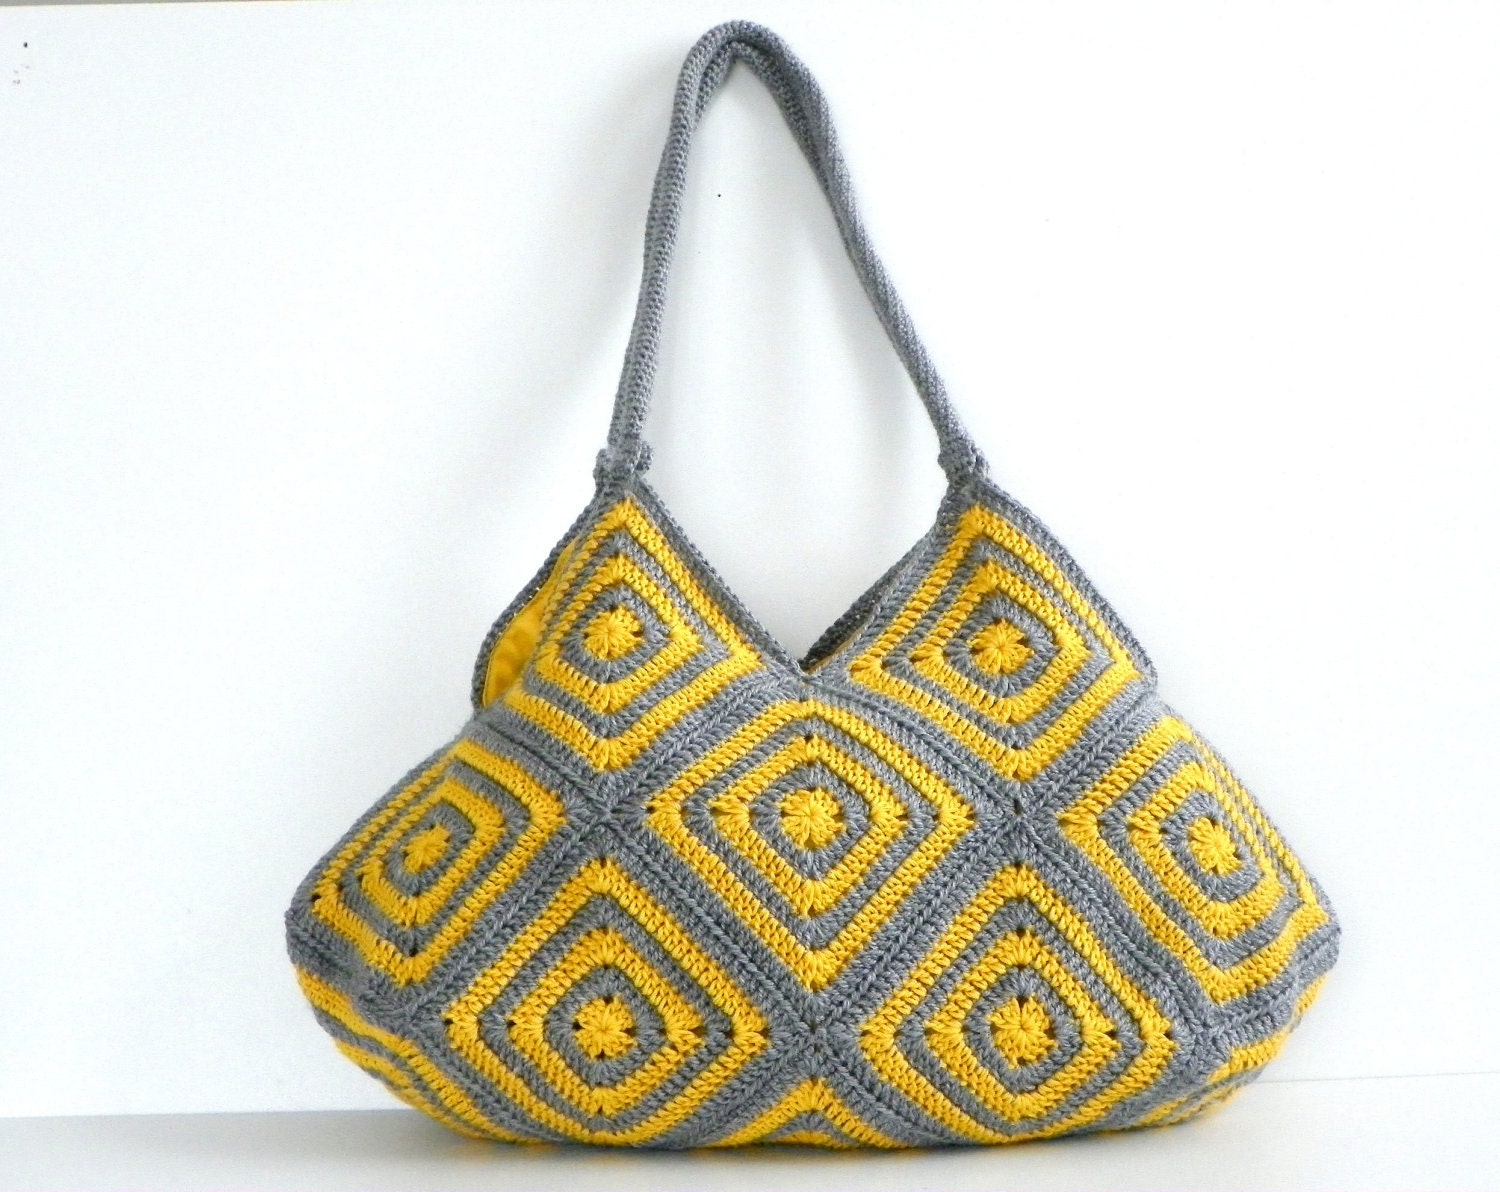 NzLbags New - Summer Bag Afghan Crochet Bag, Handbag - Shoulder Bag Nr-0183